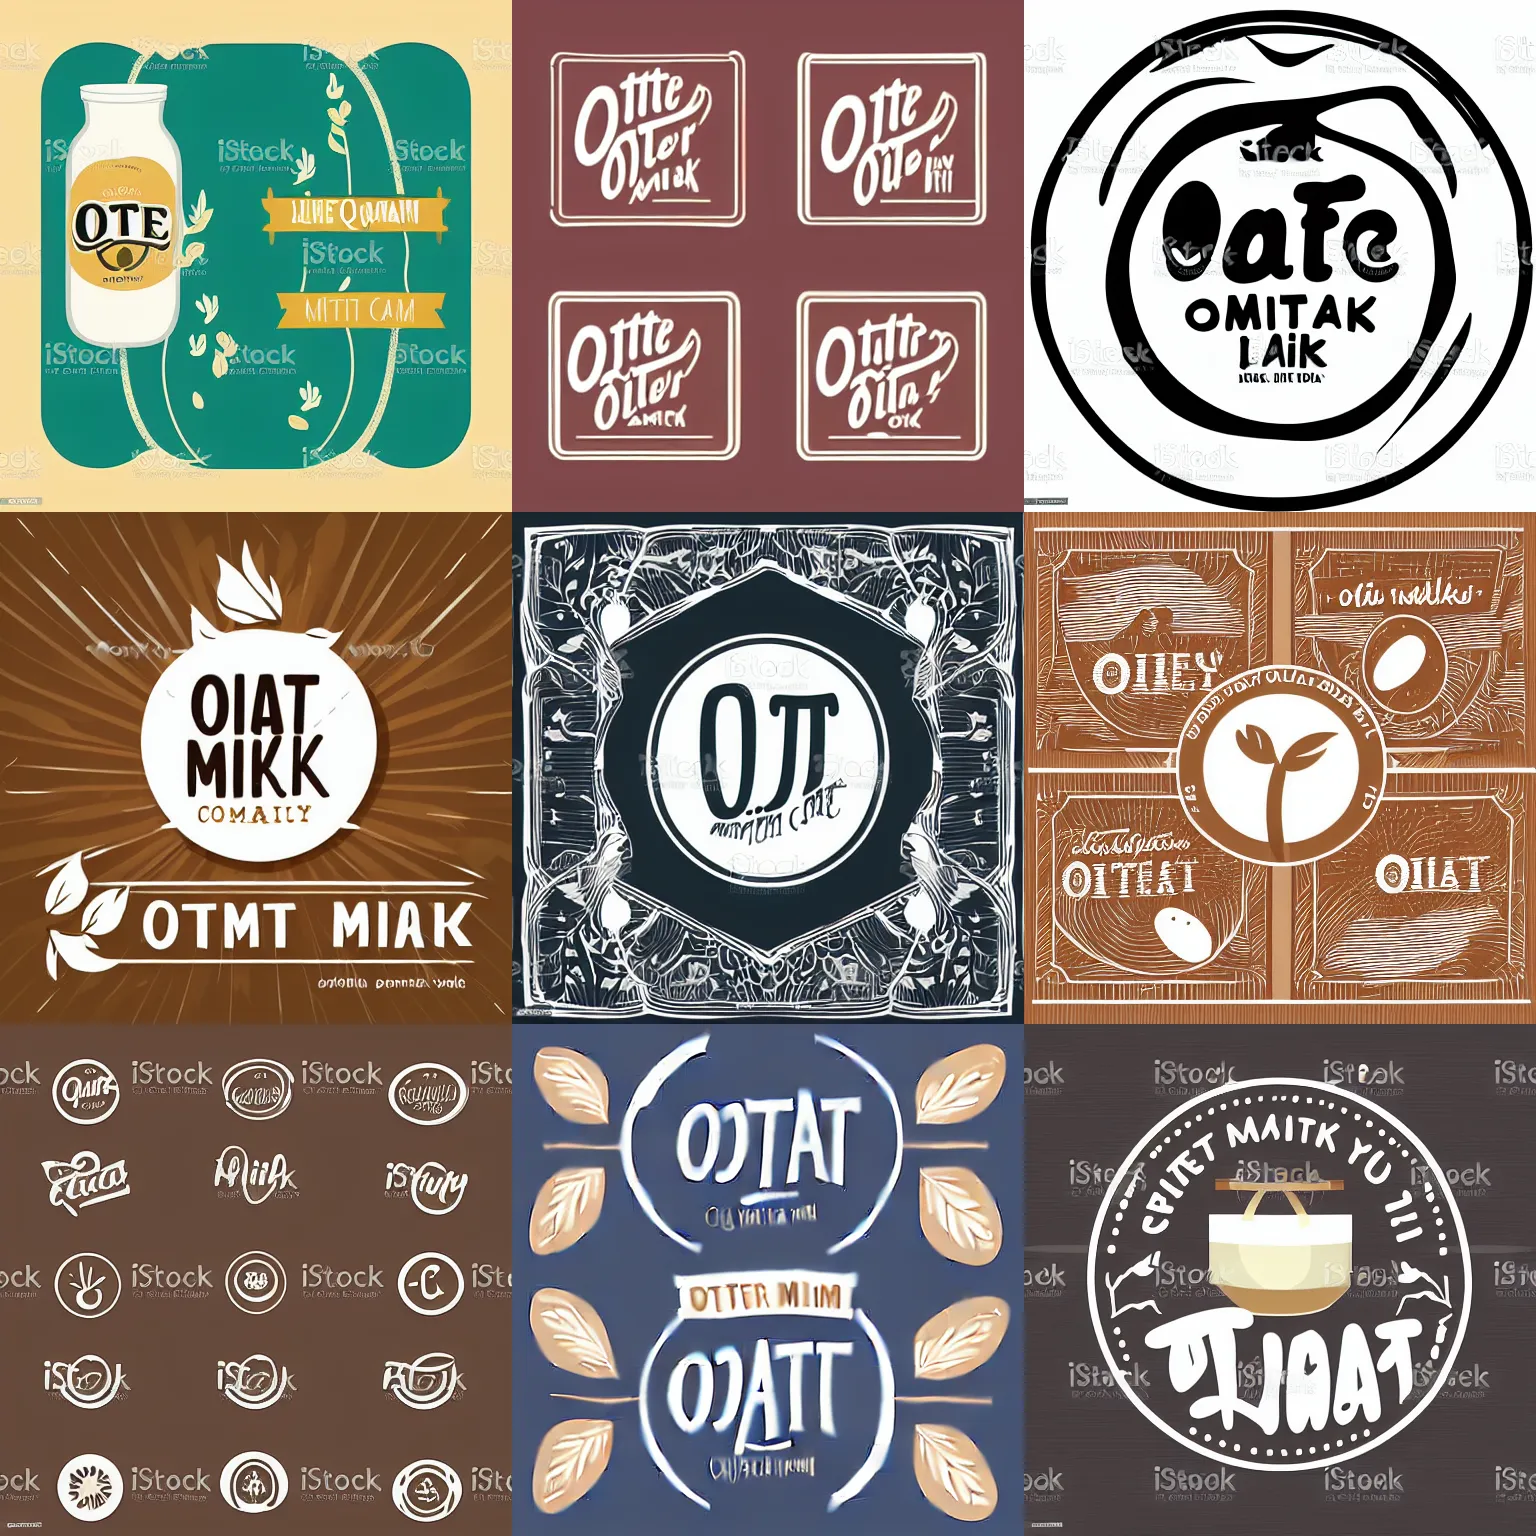 Prompt: oat milk company logo vector art design